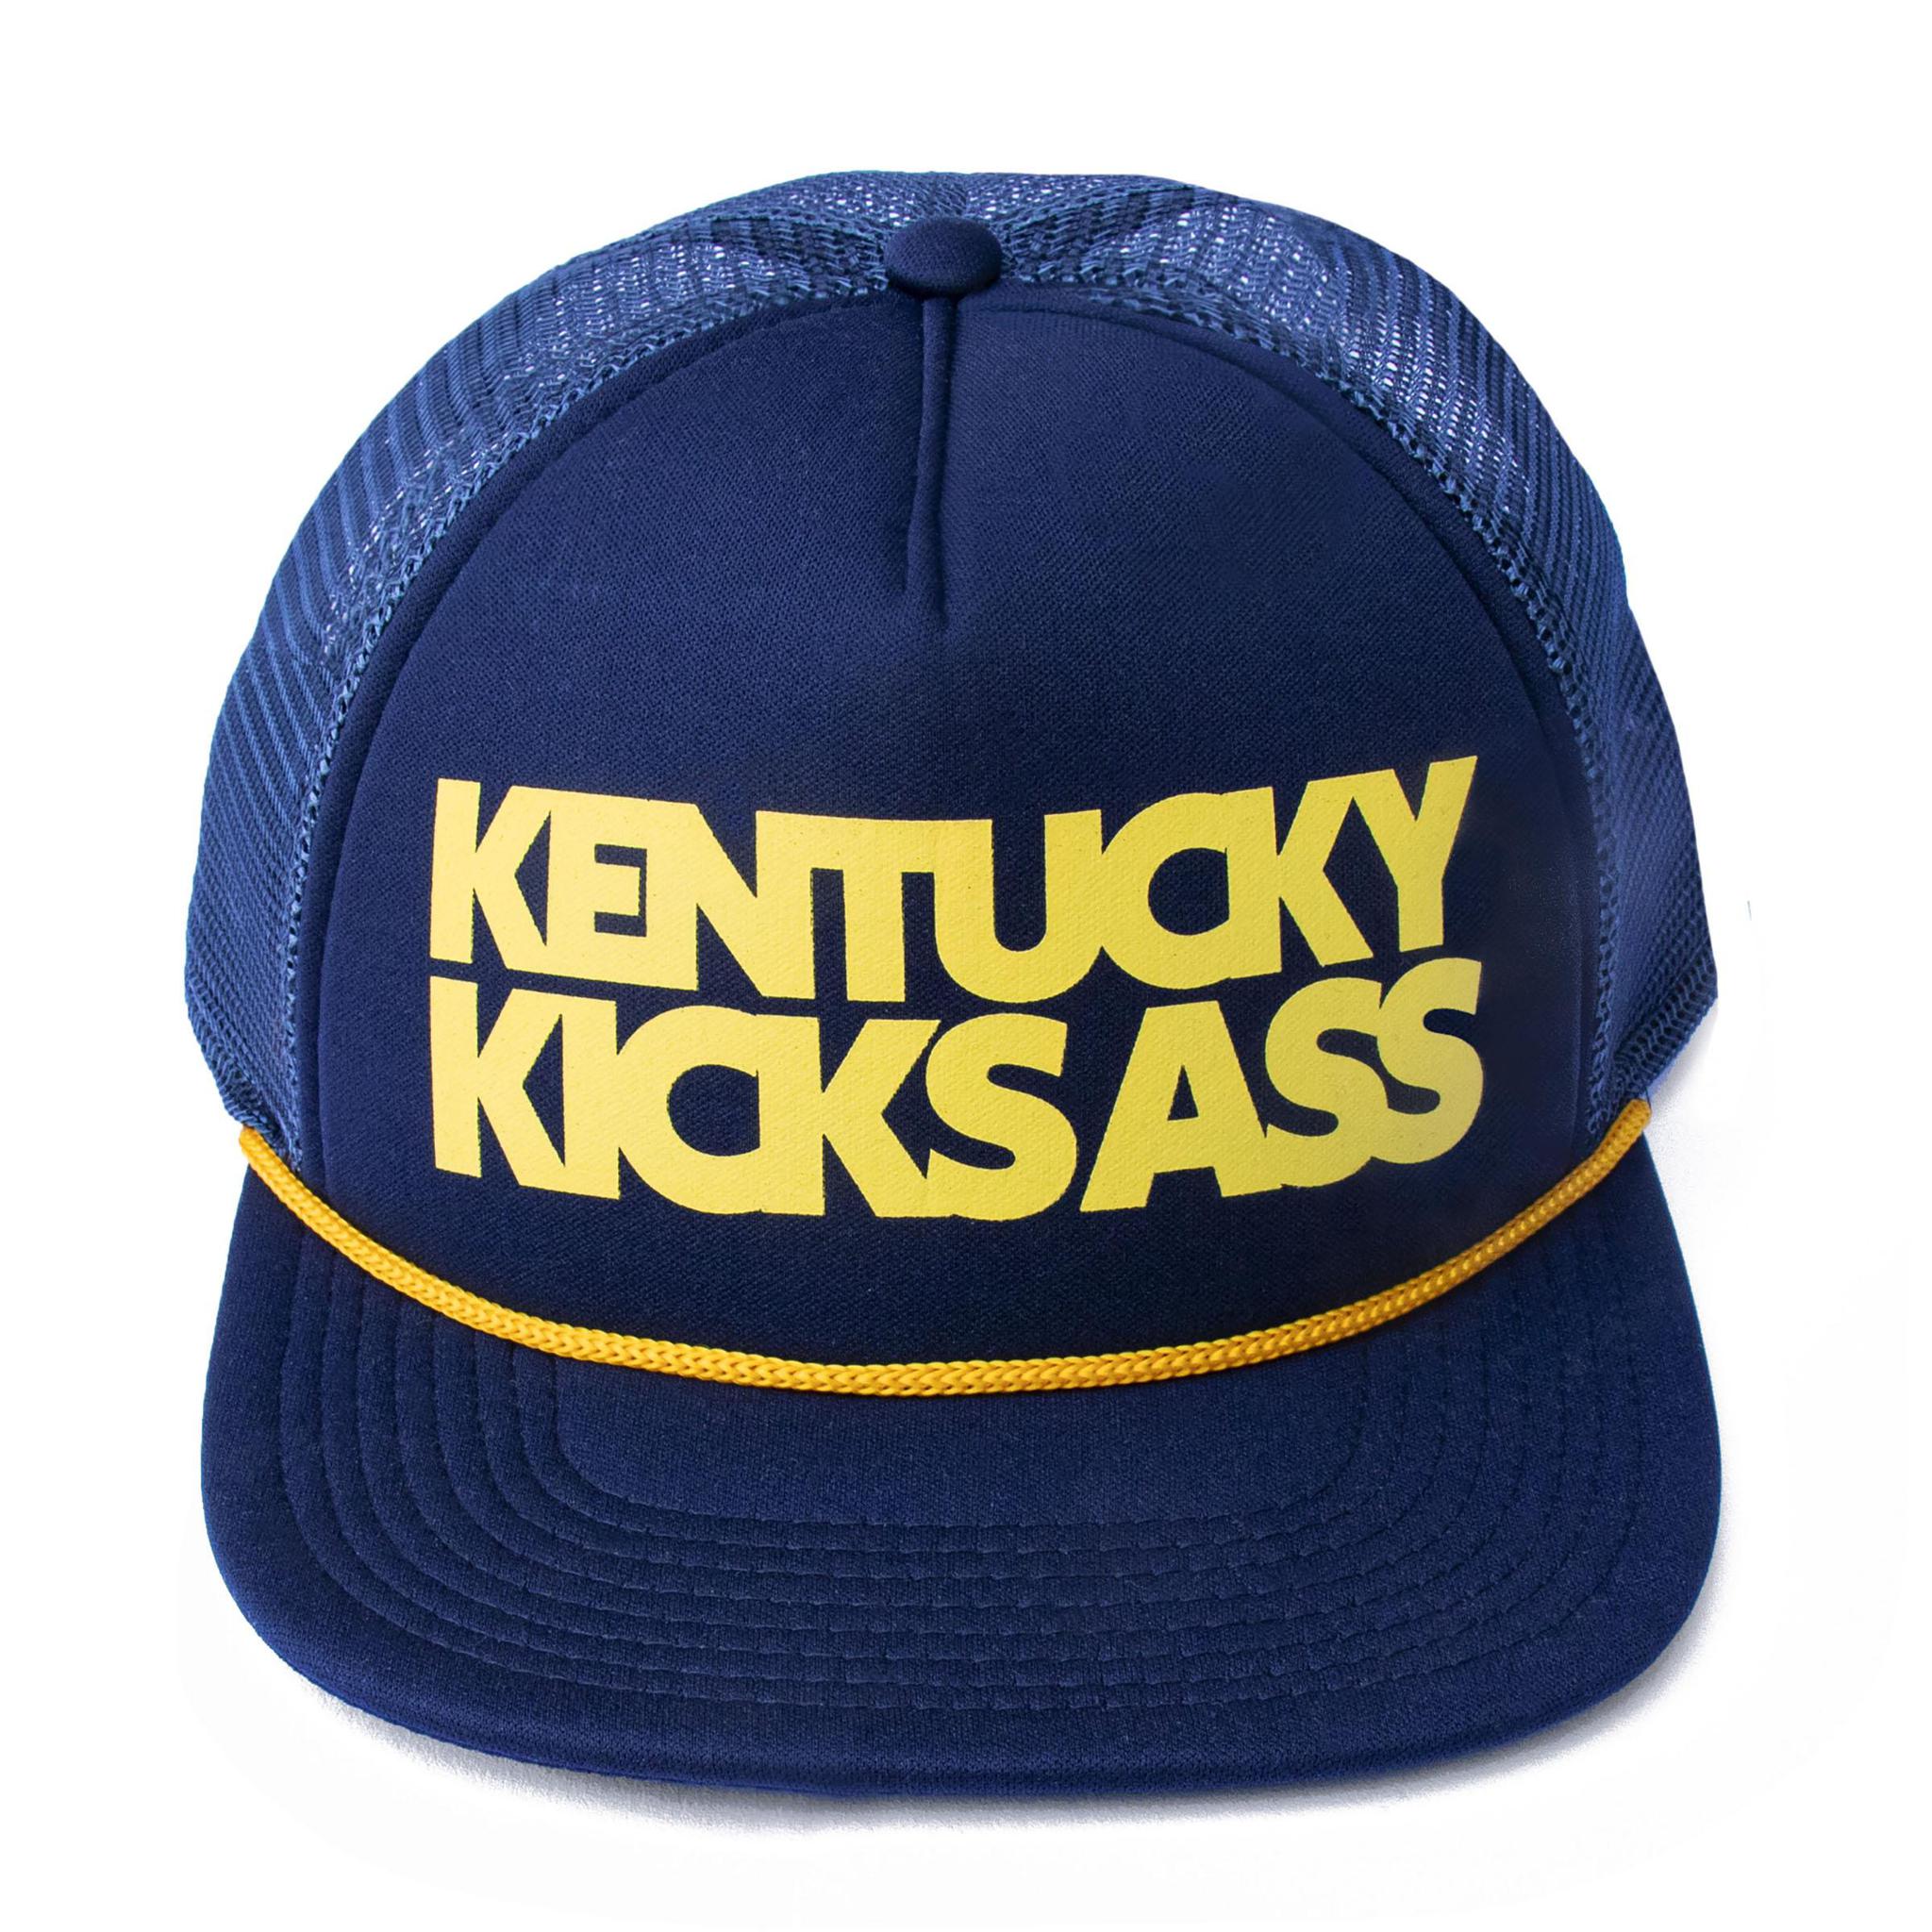 Kentucky Kicks Ass Trucker Hat (Navy)